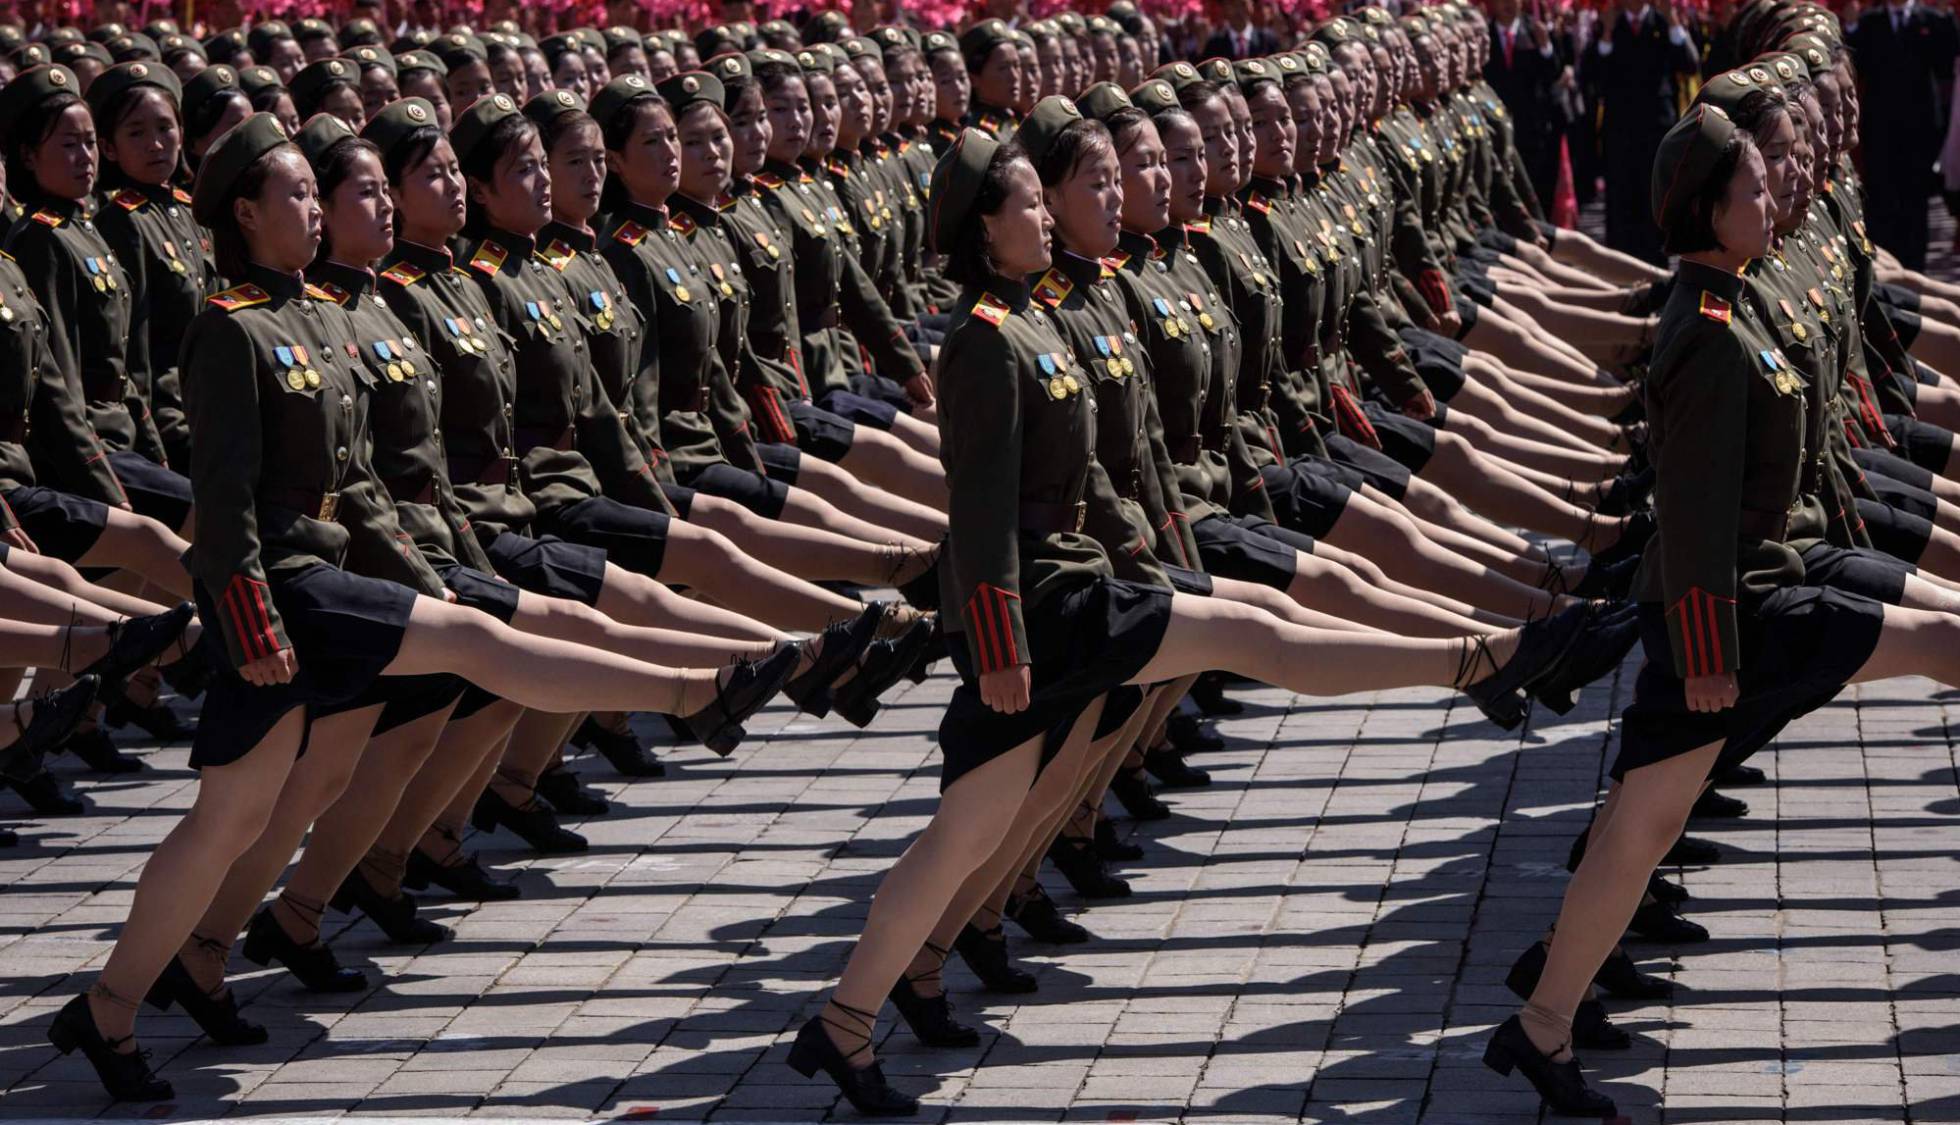 Fotos: Celebración del 70 aniversario de Corea del Norte, en imágenes